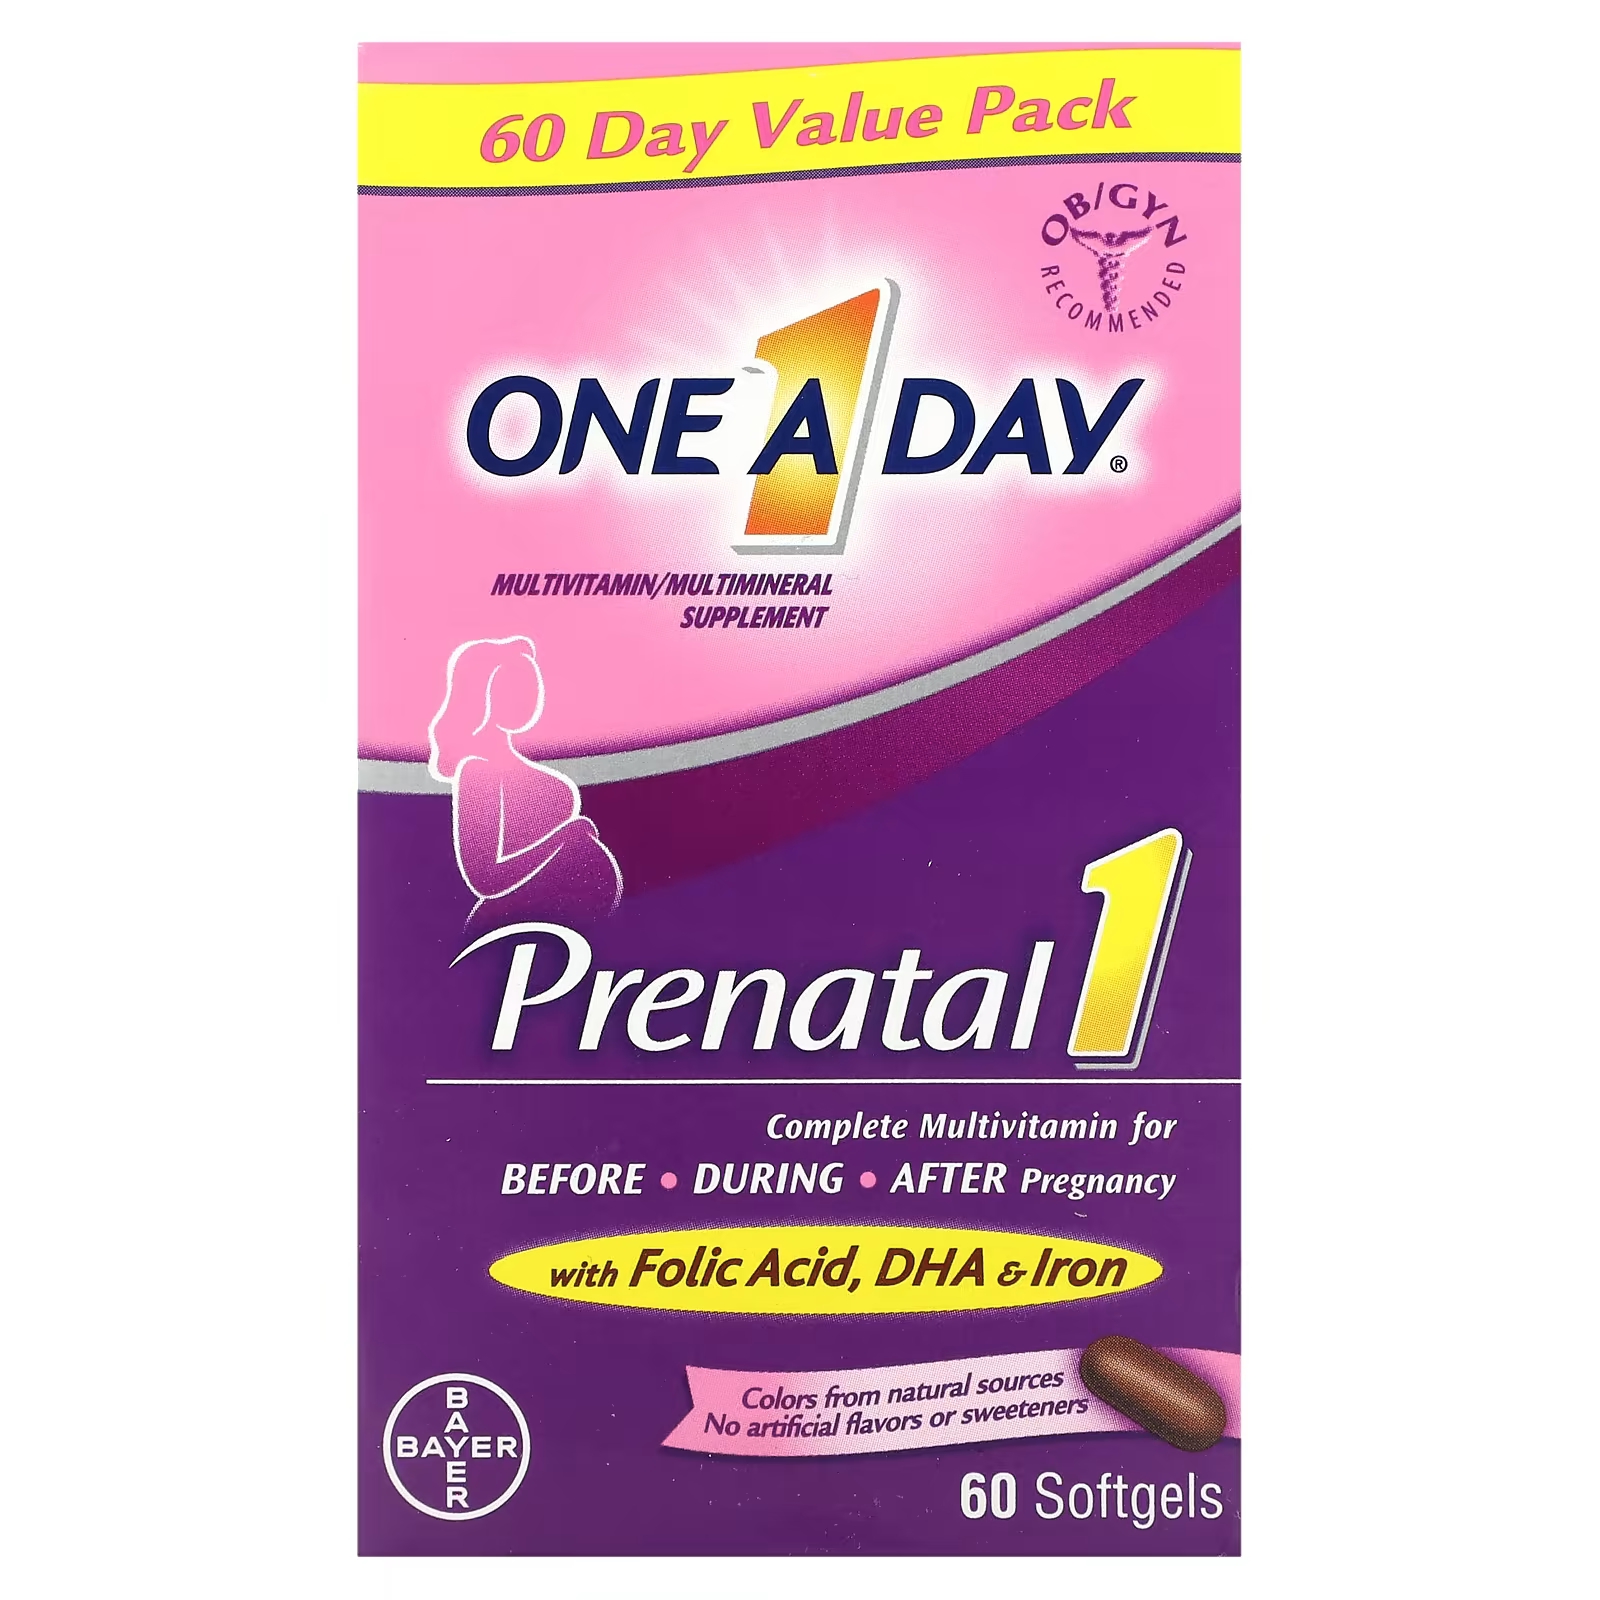 Мультиминеральная добавка One-A-Day Prenatal 1 с фолиевой кислотой, DHA и железом, 60 мягких таблеток